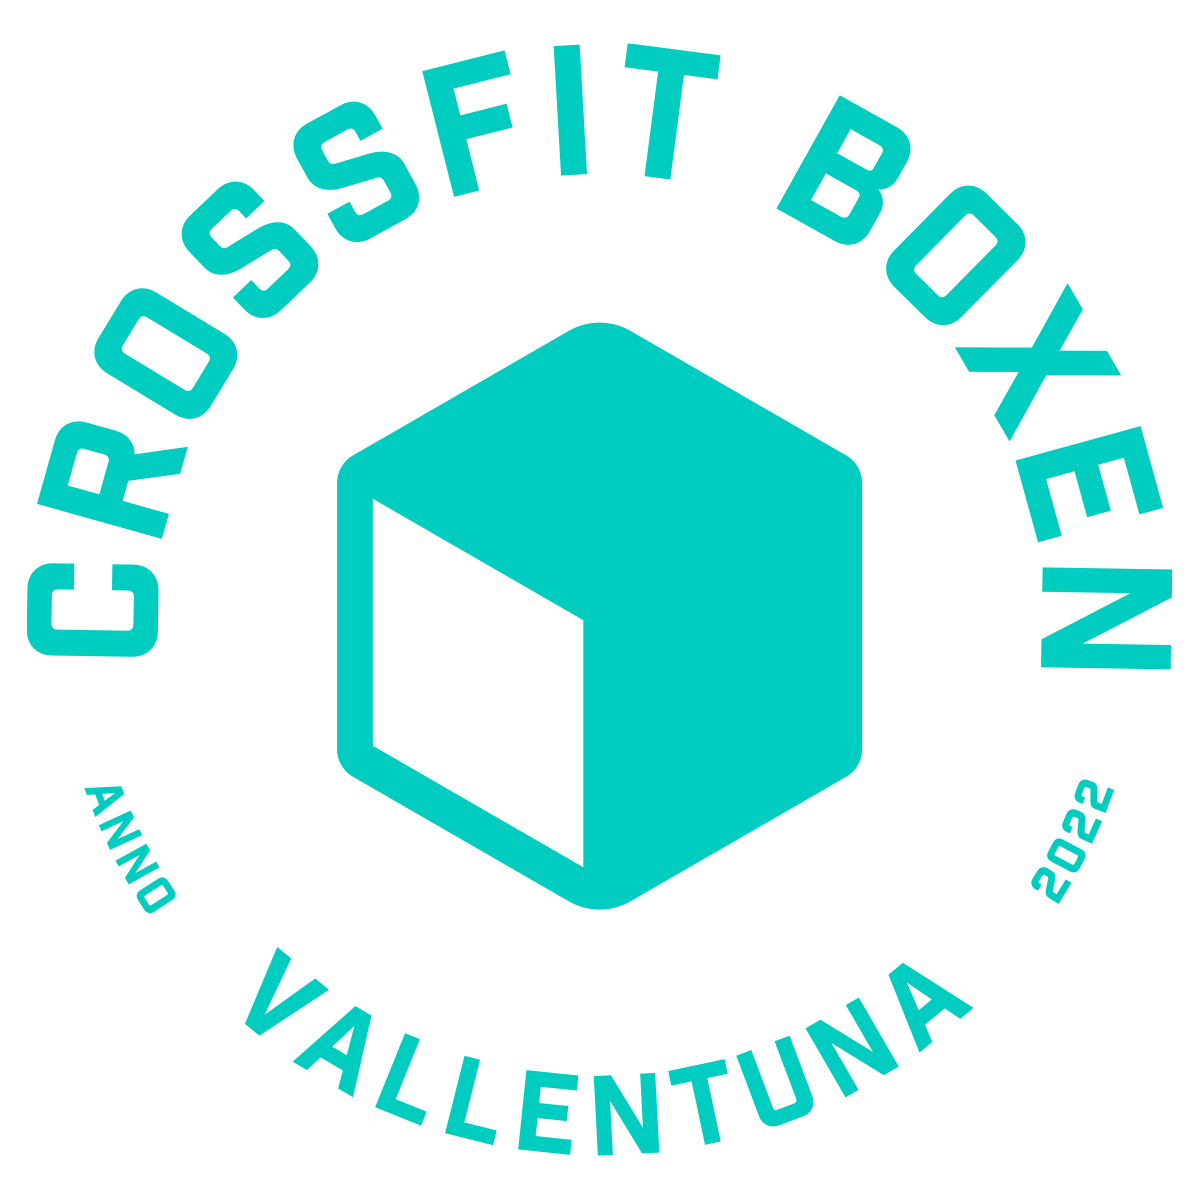 CrossFit Boxen Vallentuna